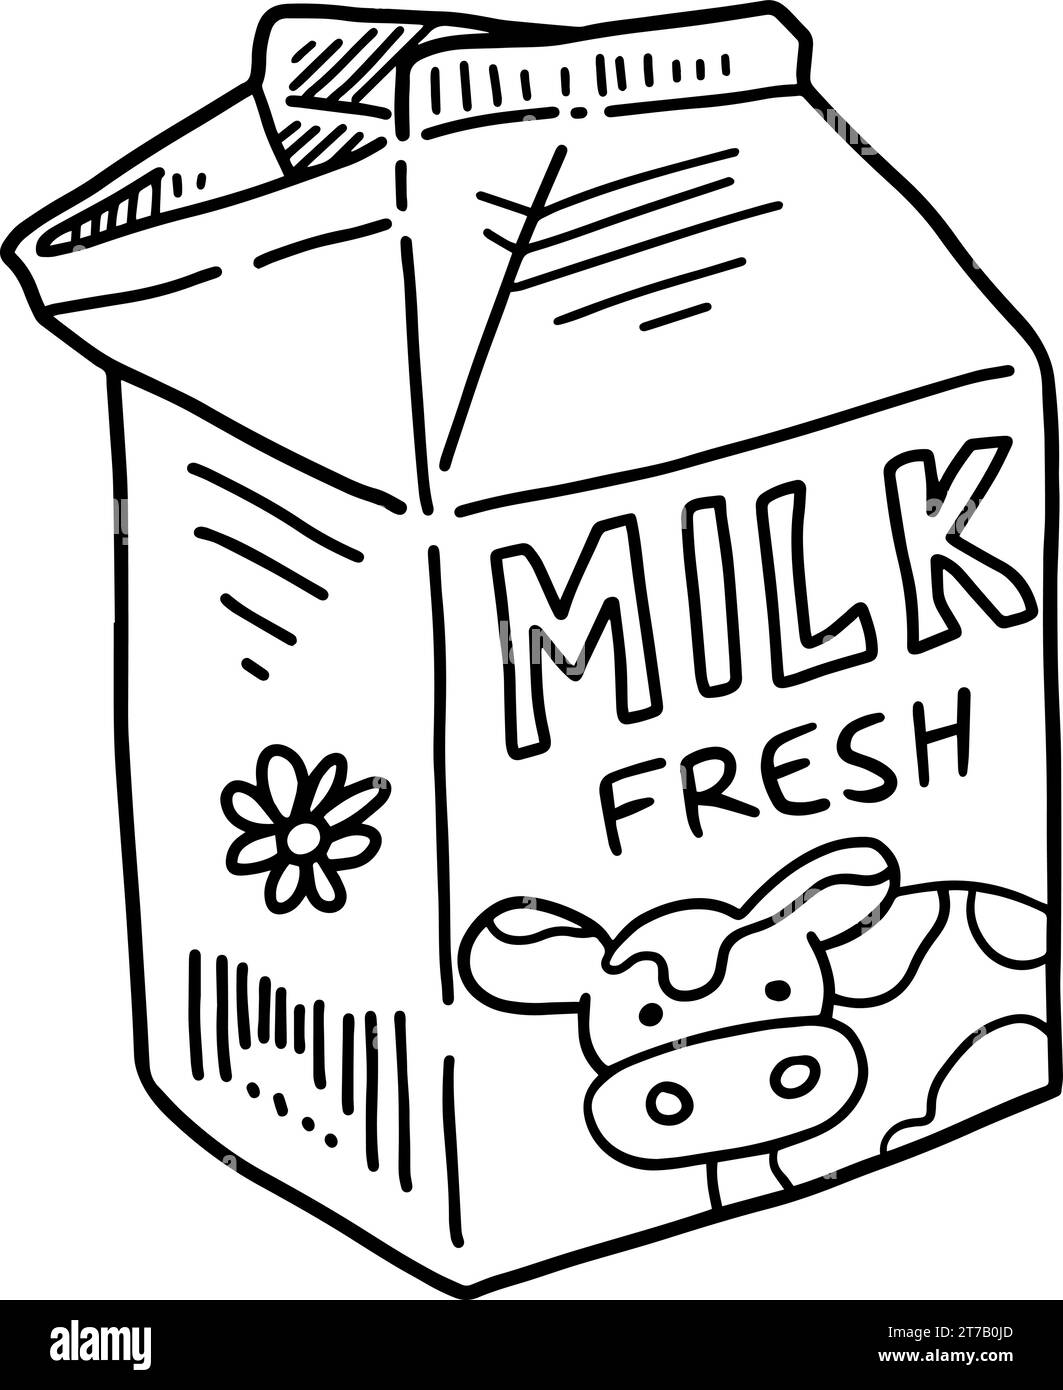 Carton de lait clipart Banque d'images noir et blanc - Alamy